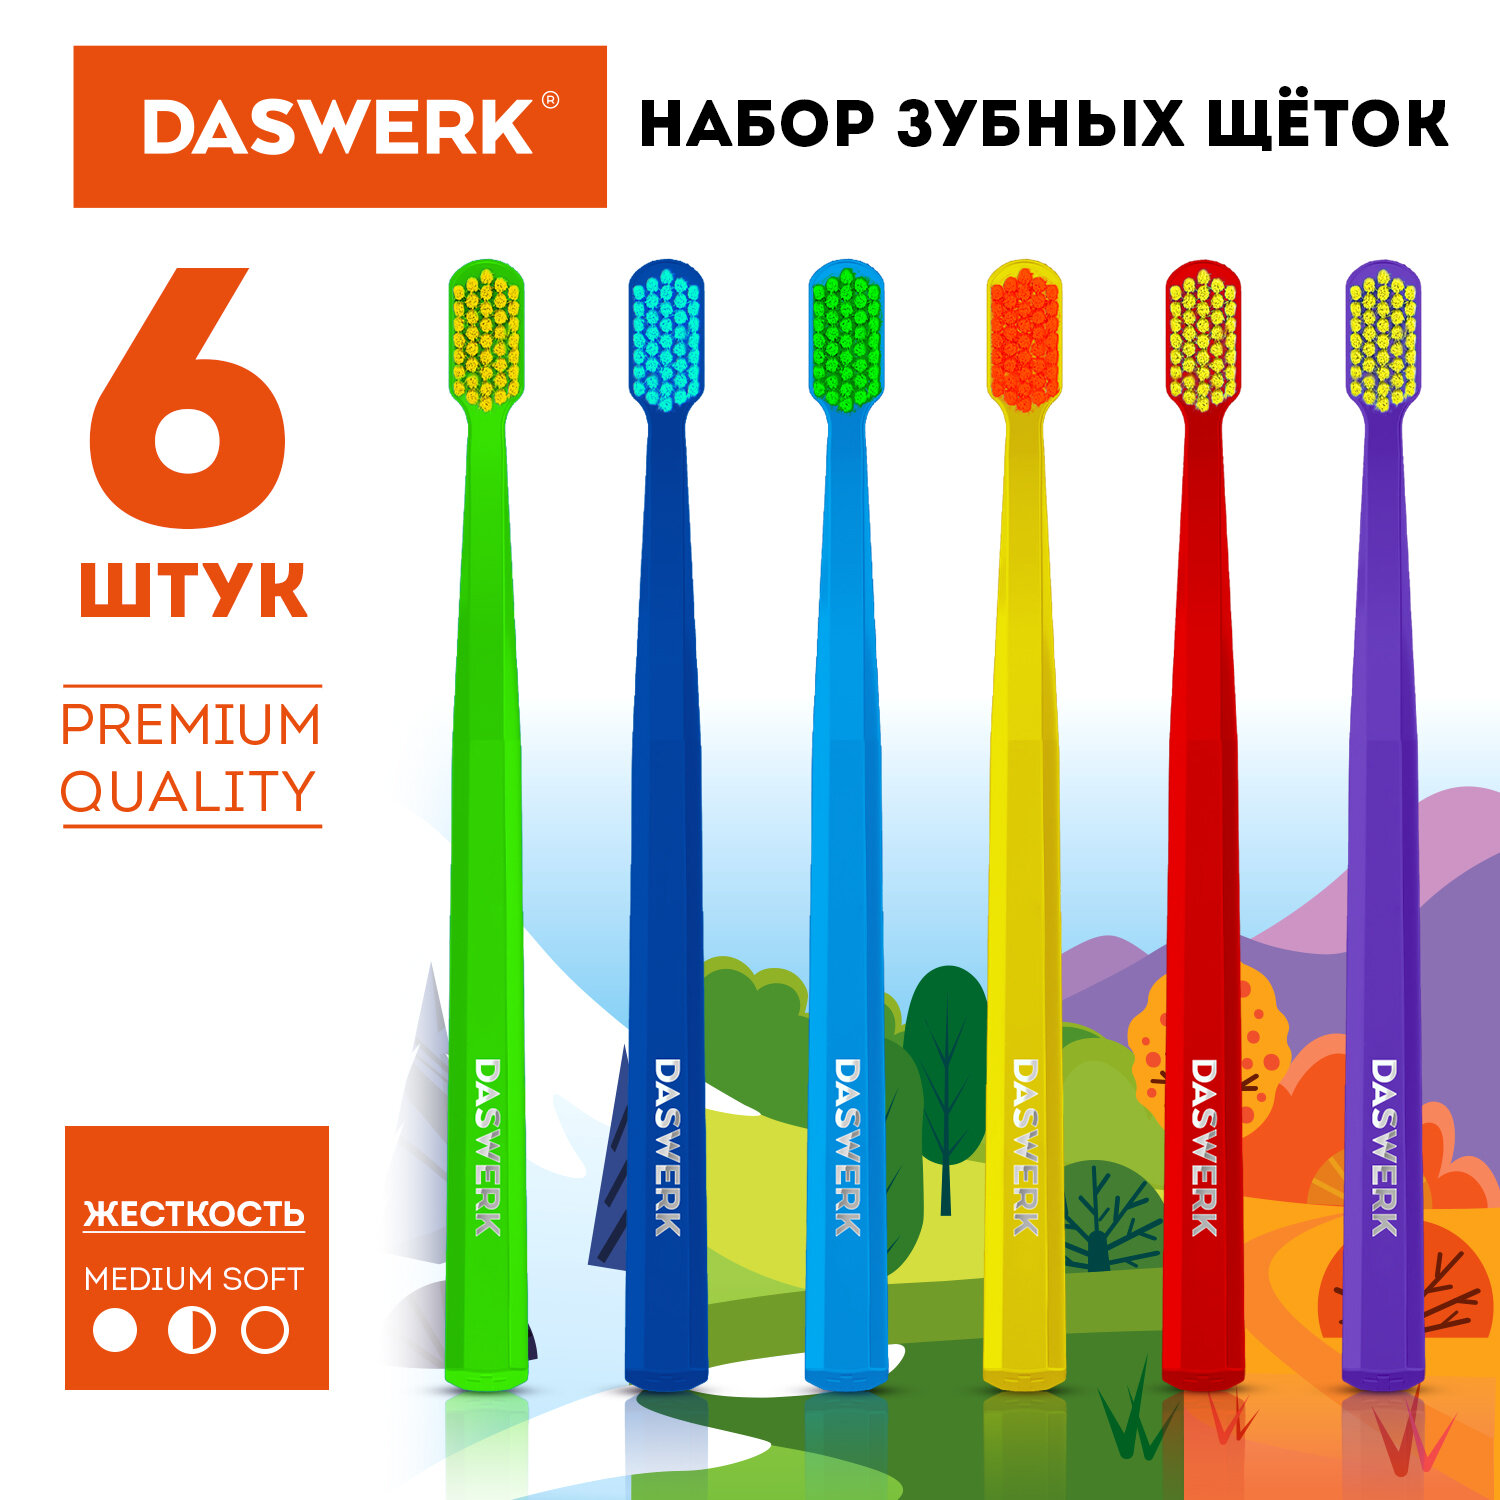 Зубная щетка DASWERK Medium Soft средне мягкие набор, 6 шт набор бигуди резиновых dewal beauty 38 мм x 70 мм 10 штук зеленые